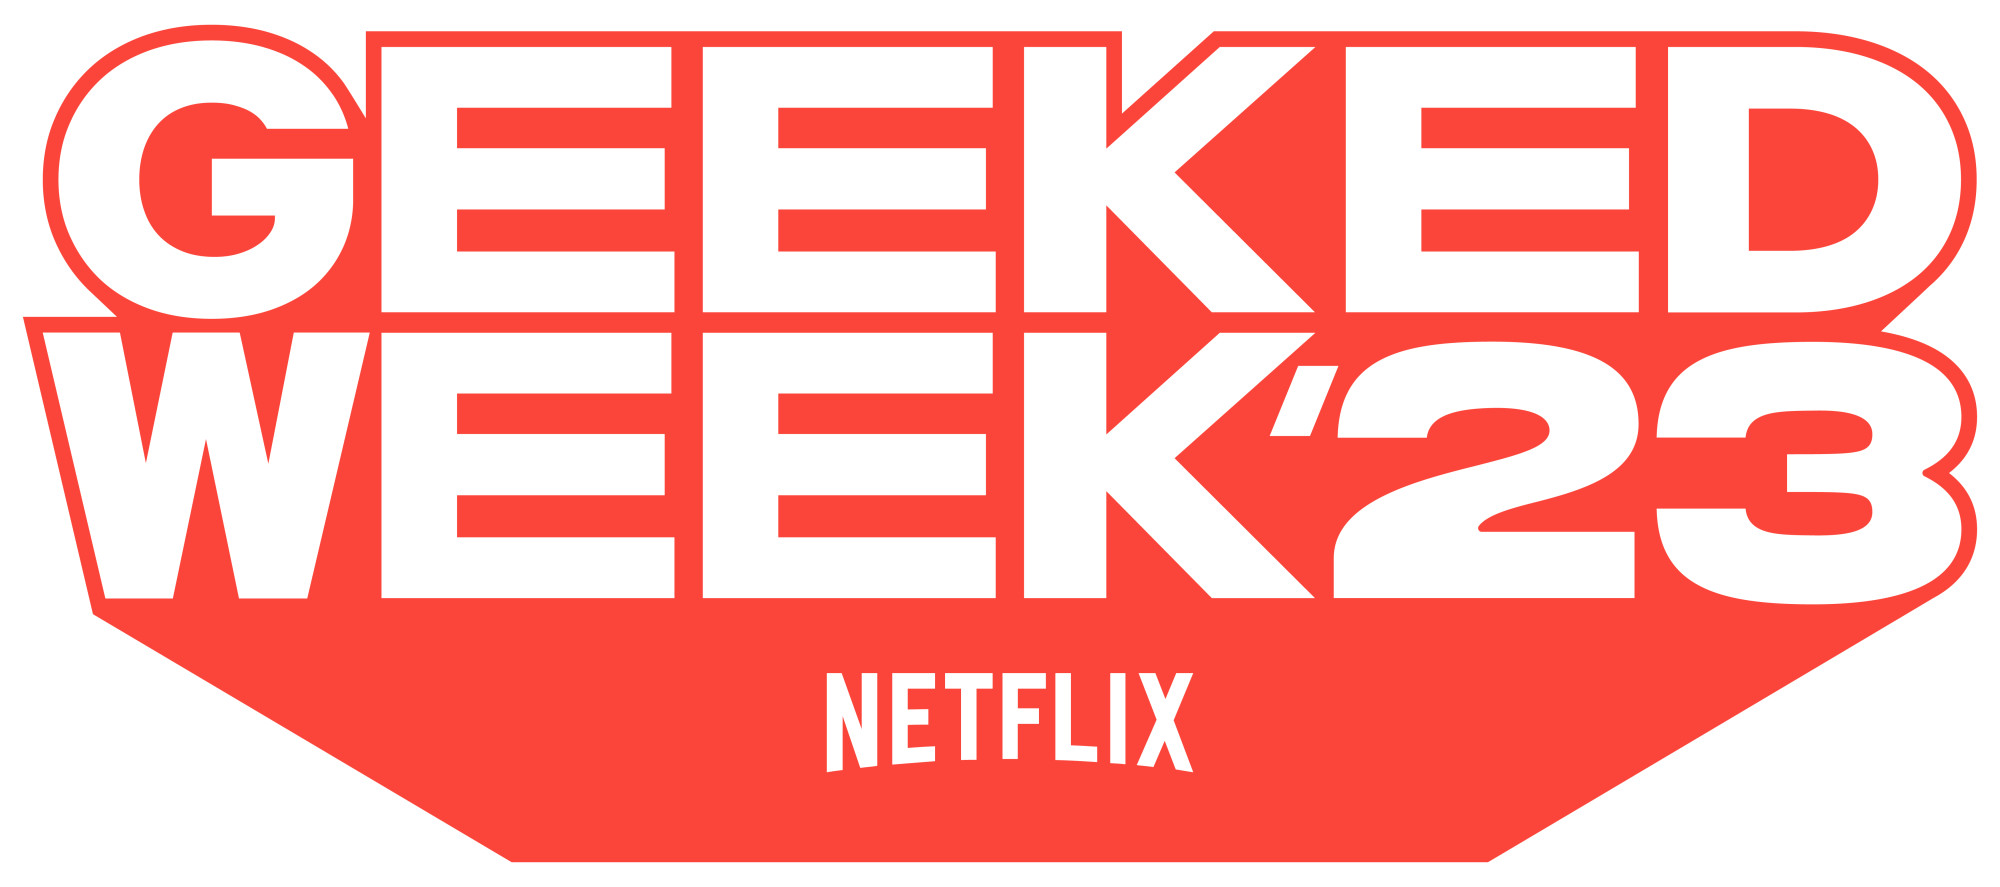 Netflix anuncia a Semana Geeked de 2023.